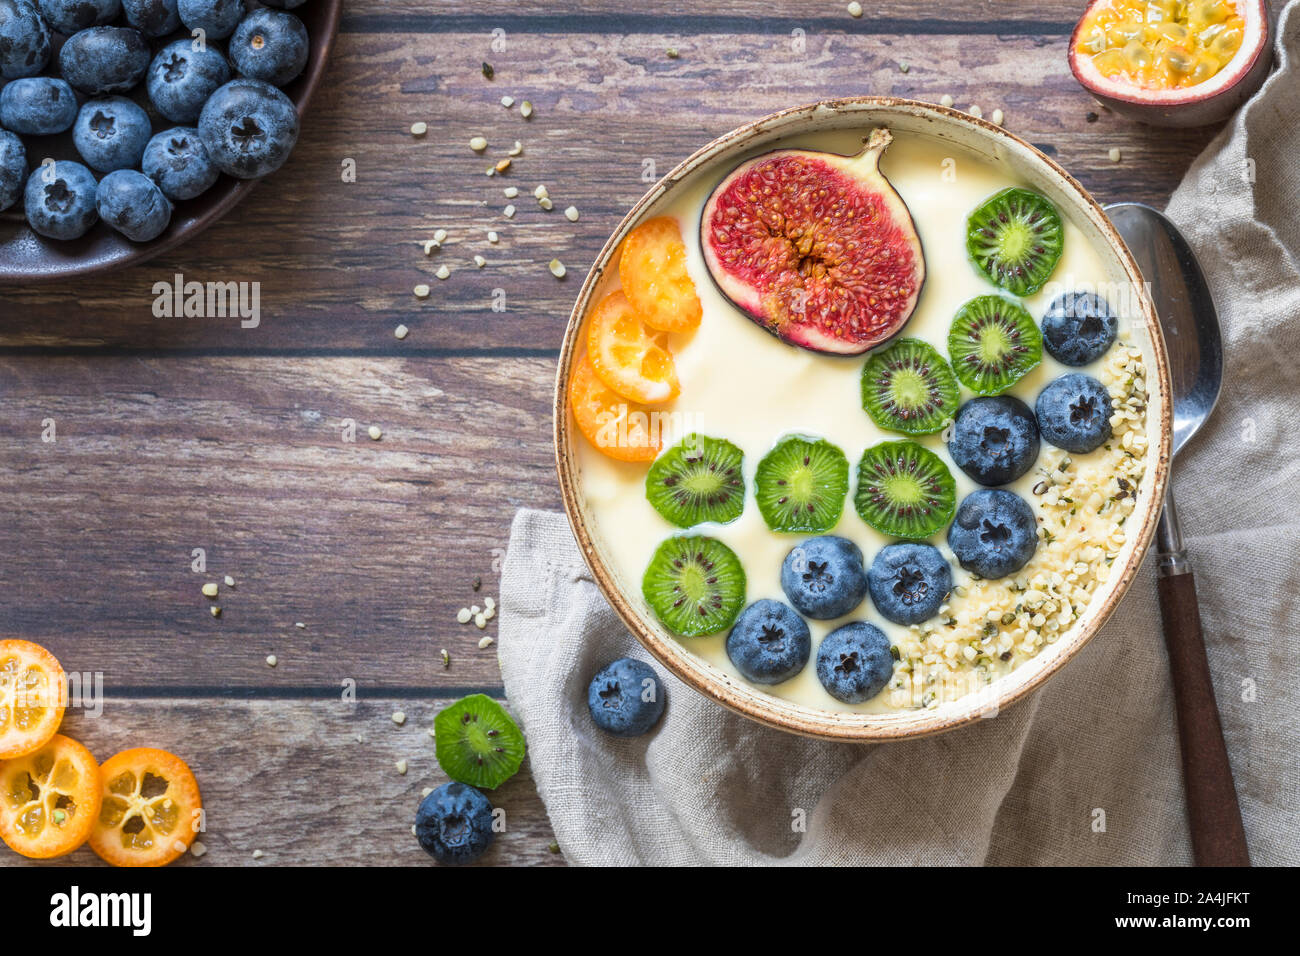 Einen frischen organischen Joghurt smoothie Schüssel mit einer Variation von frischen Früchten von oben gesehen - Heidelbeeren, Kiwis, Feigen, Passionsfrucht und kumquat und Stockfoto